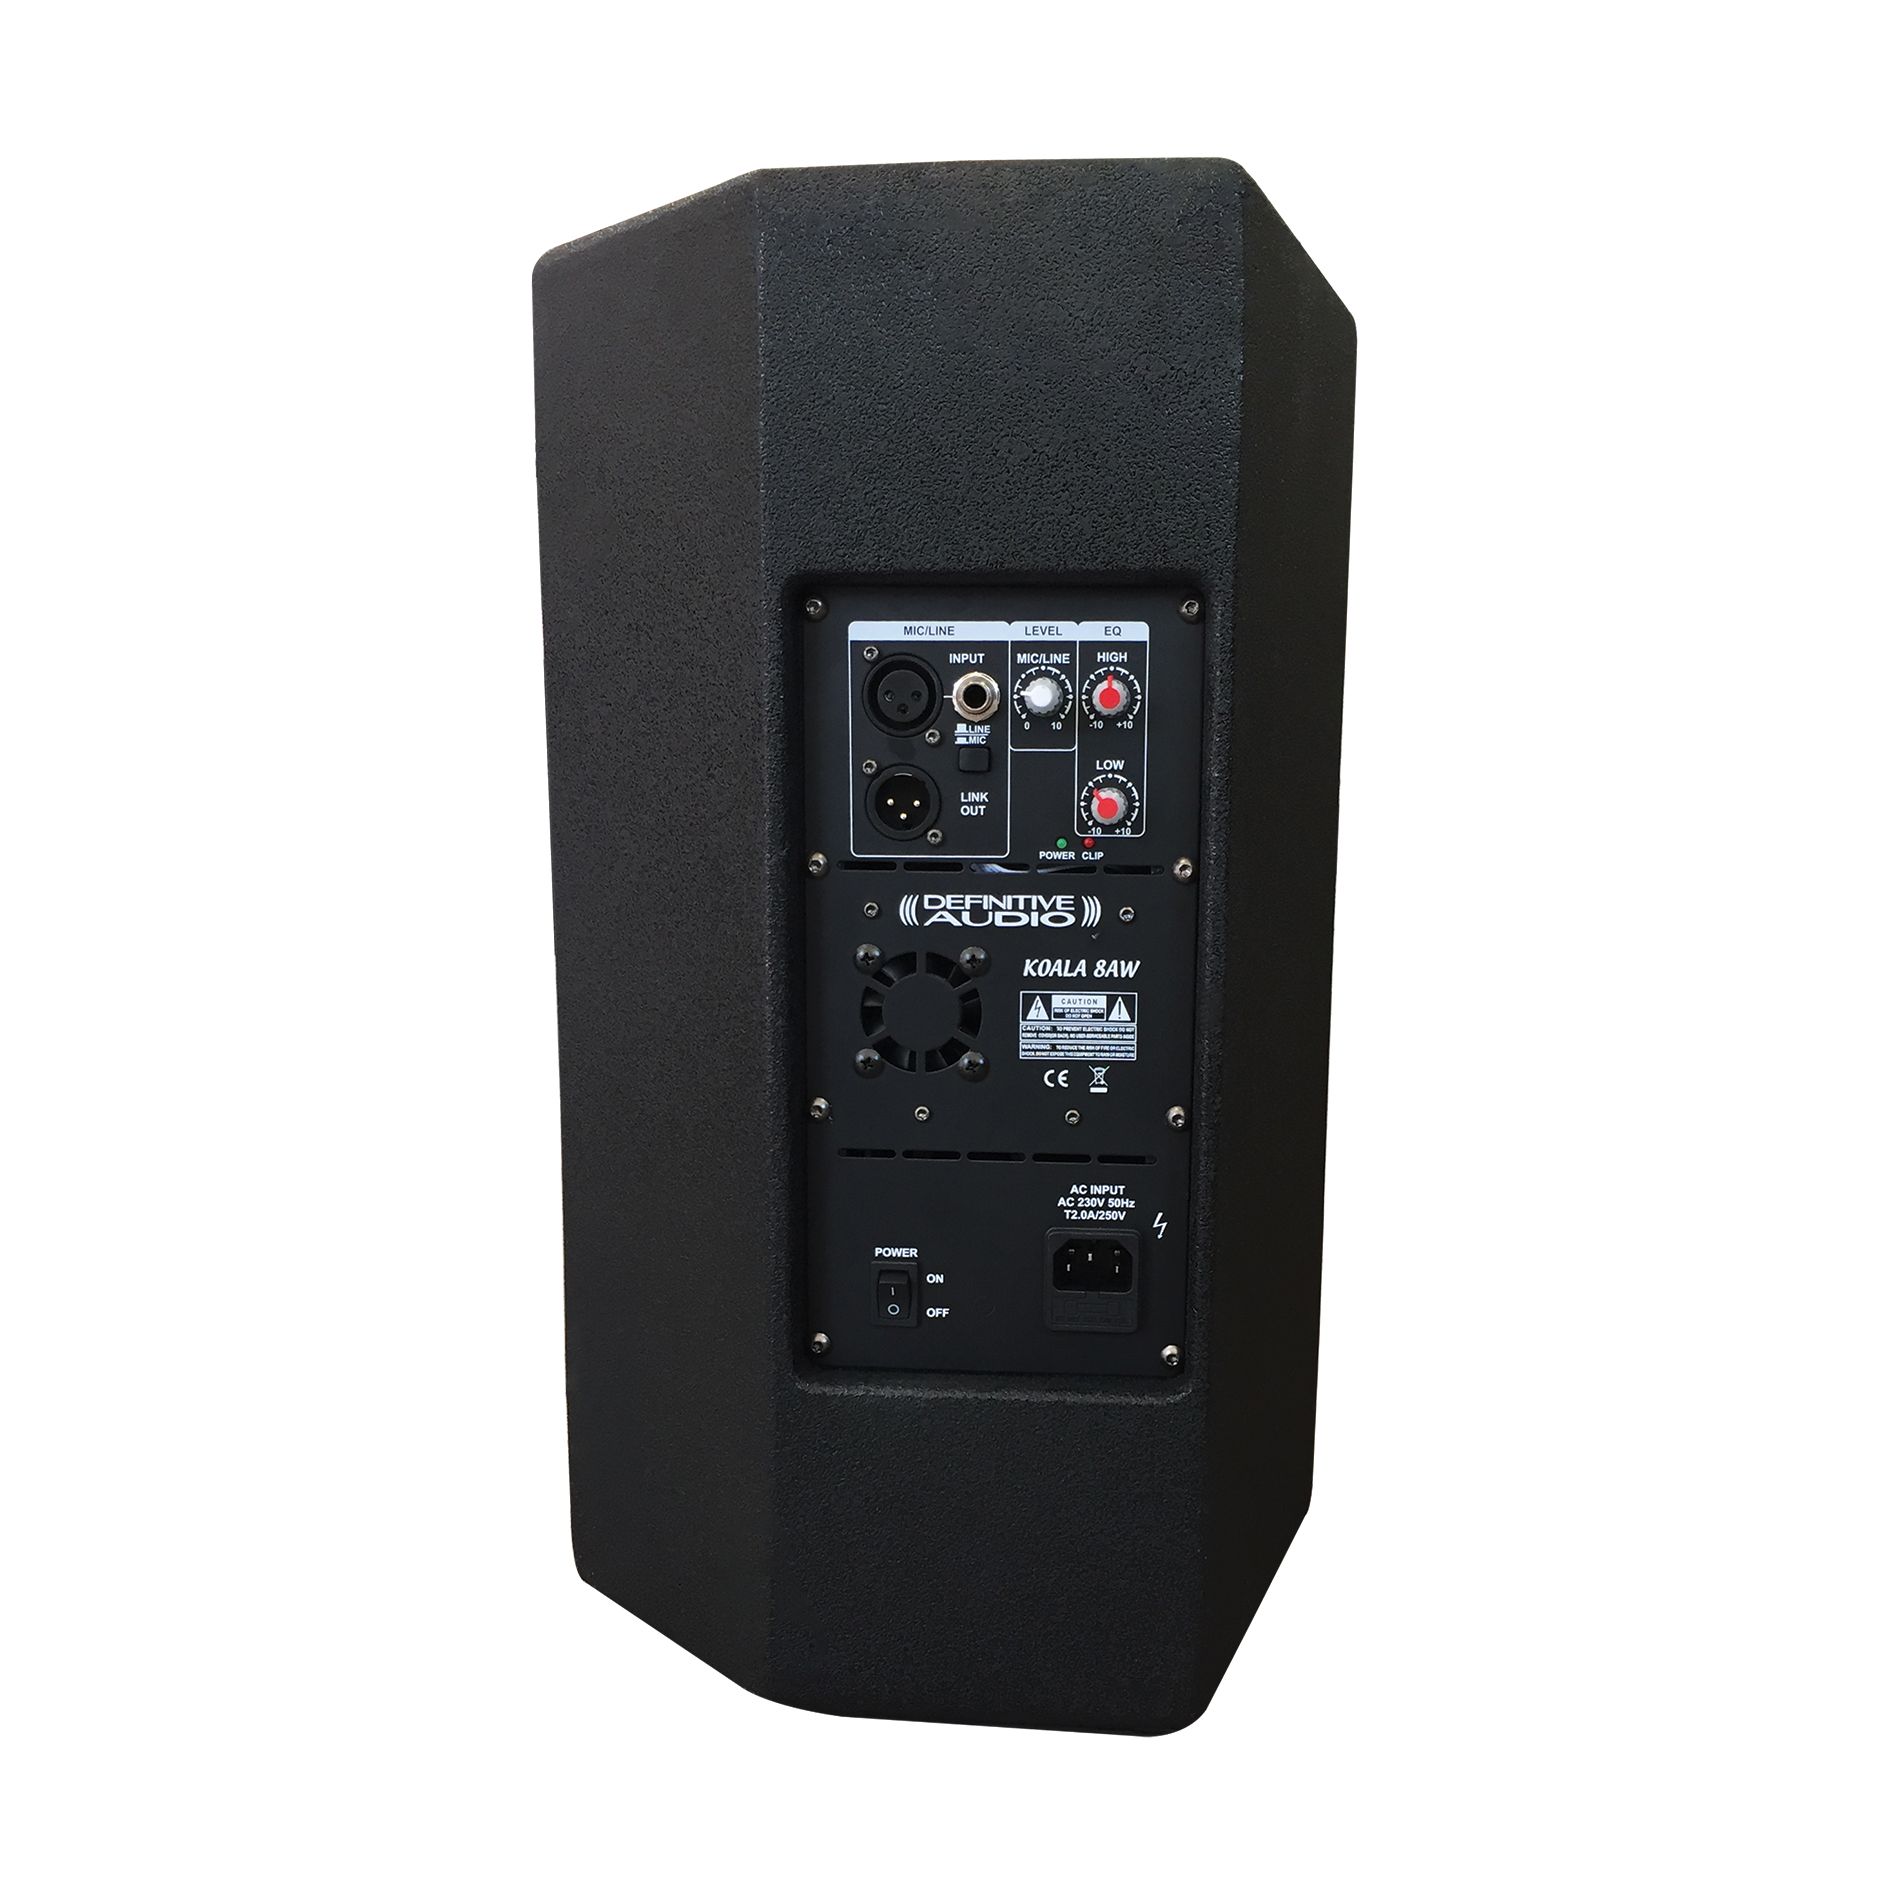 Definitive Audio Koala 8aw Dsp - Active full-range speaker - Variation 1